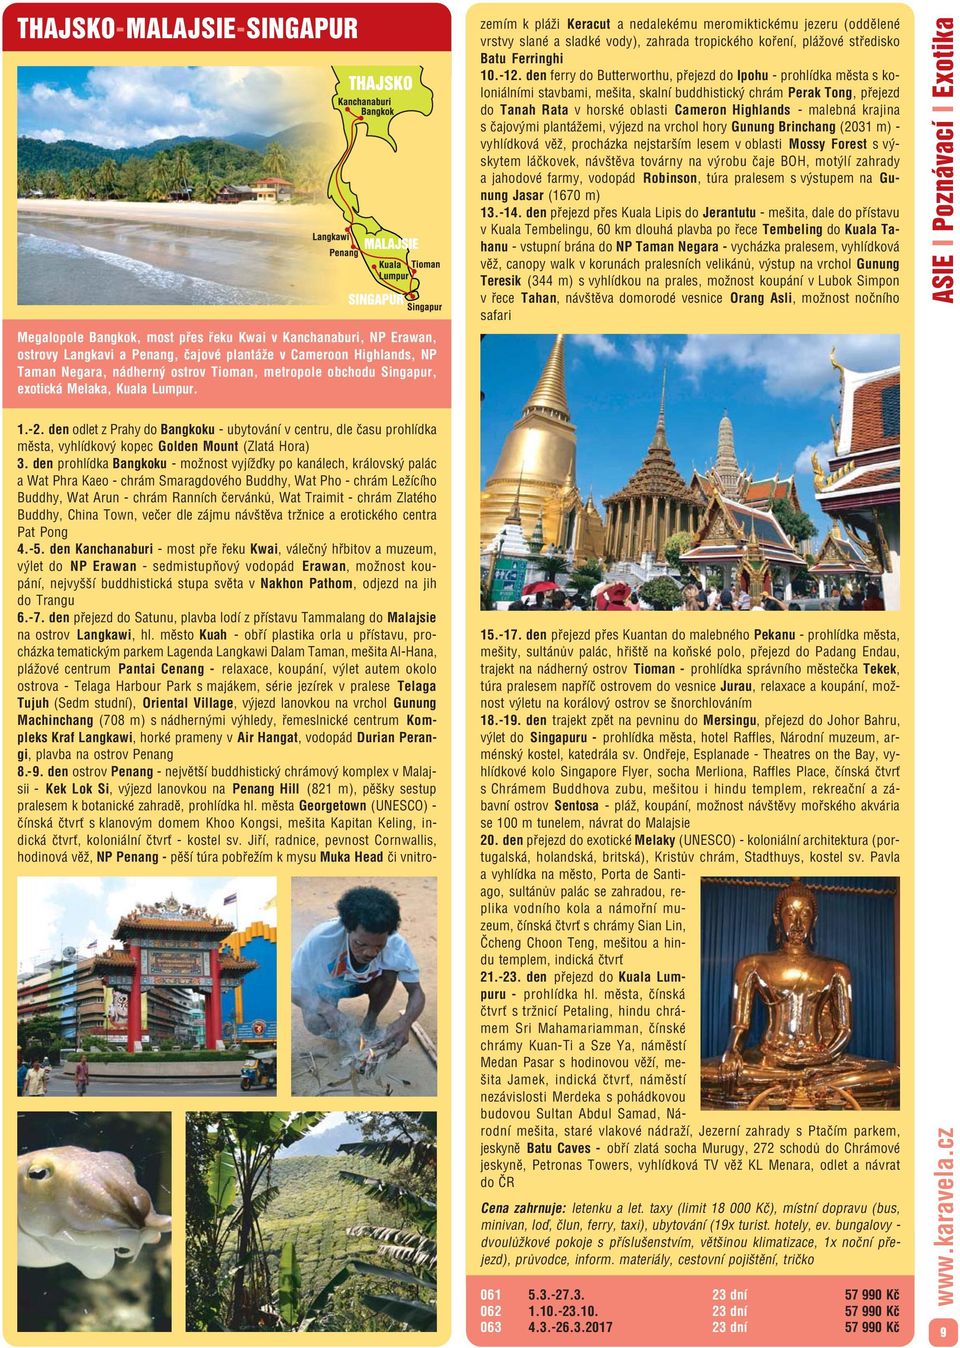 den prohlídka Bangkoku možnost vyjížďky po kanálech, královský palác a Wat Phra Kaeo chrám Smaragdového Buddhy, Wat Pho chrám Ležícího Buddhy, Wat Arun chrám Ranních červánků, Wat Traimit chrám